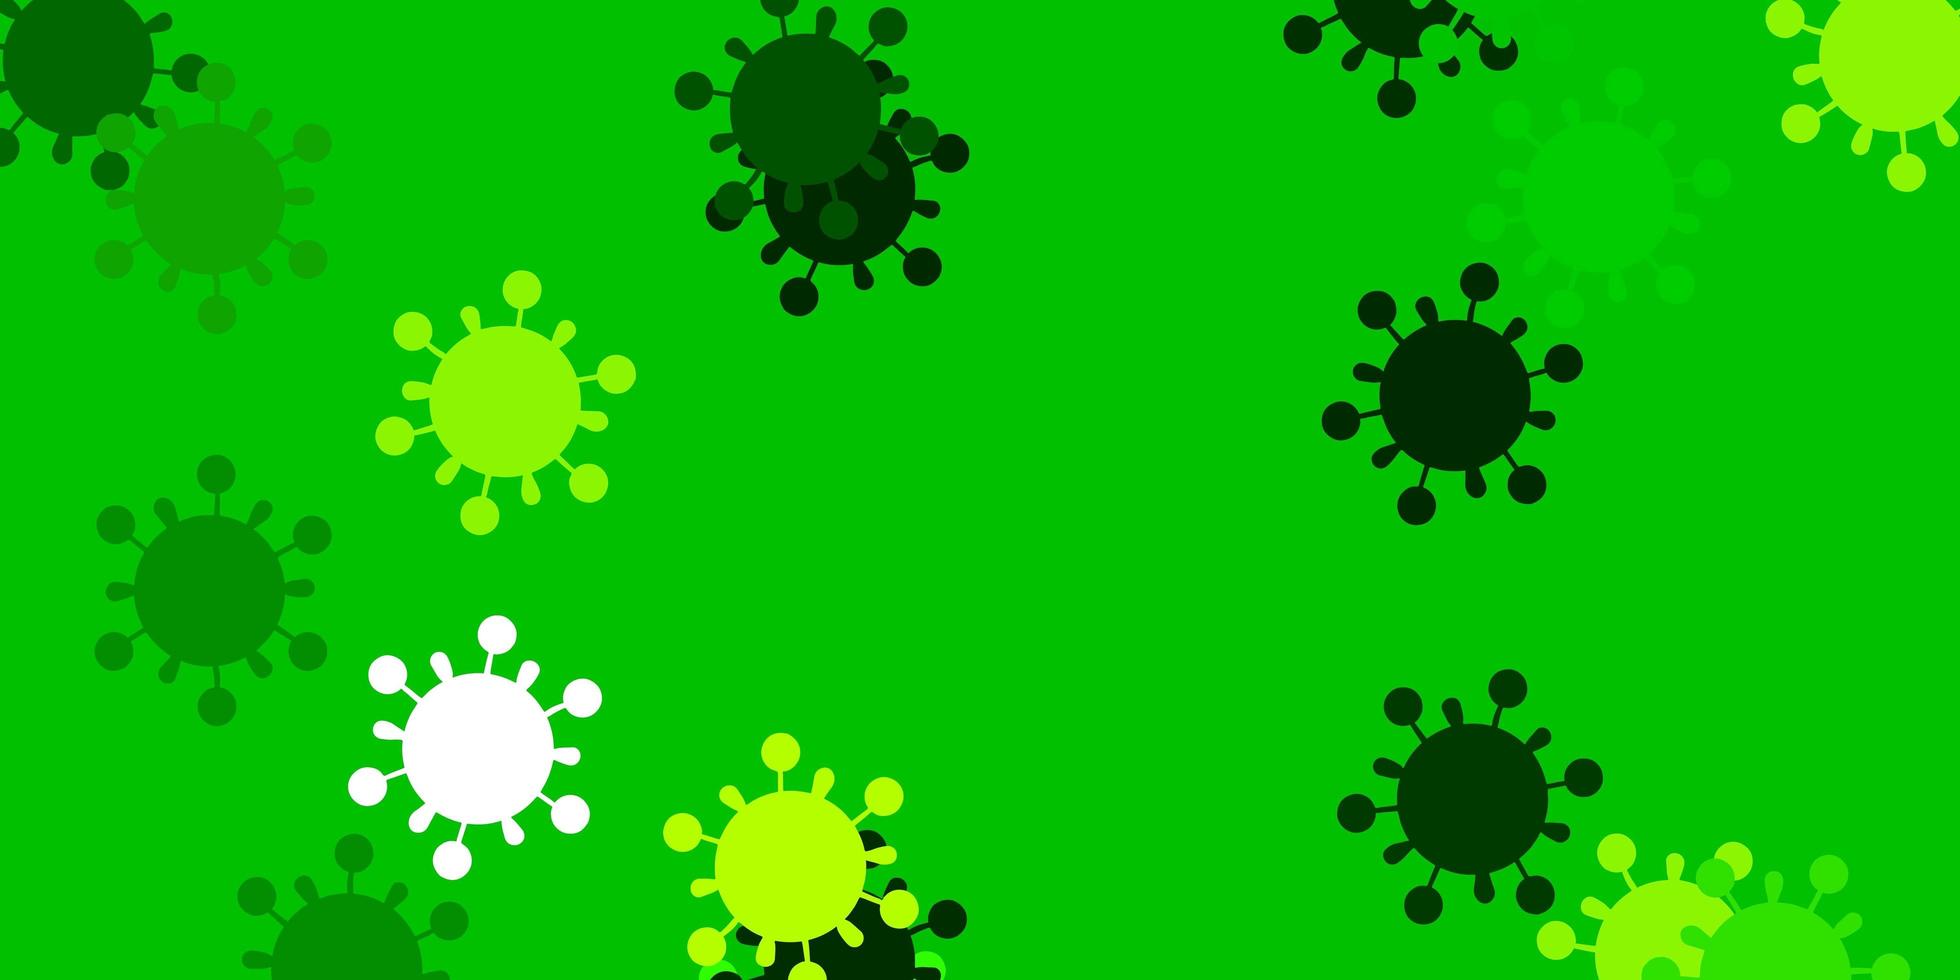 modello vettoriale giallo verde chiaro con segni di influenza